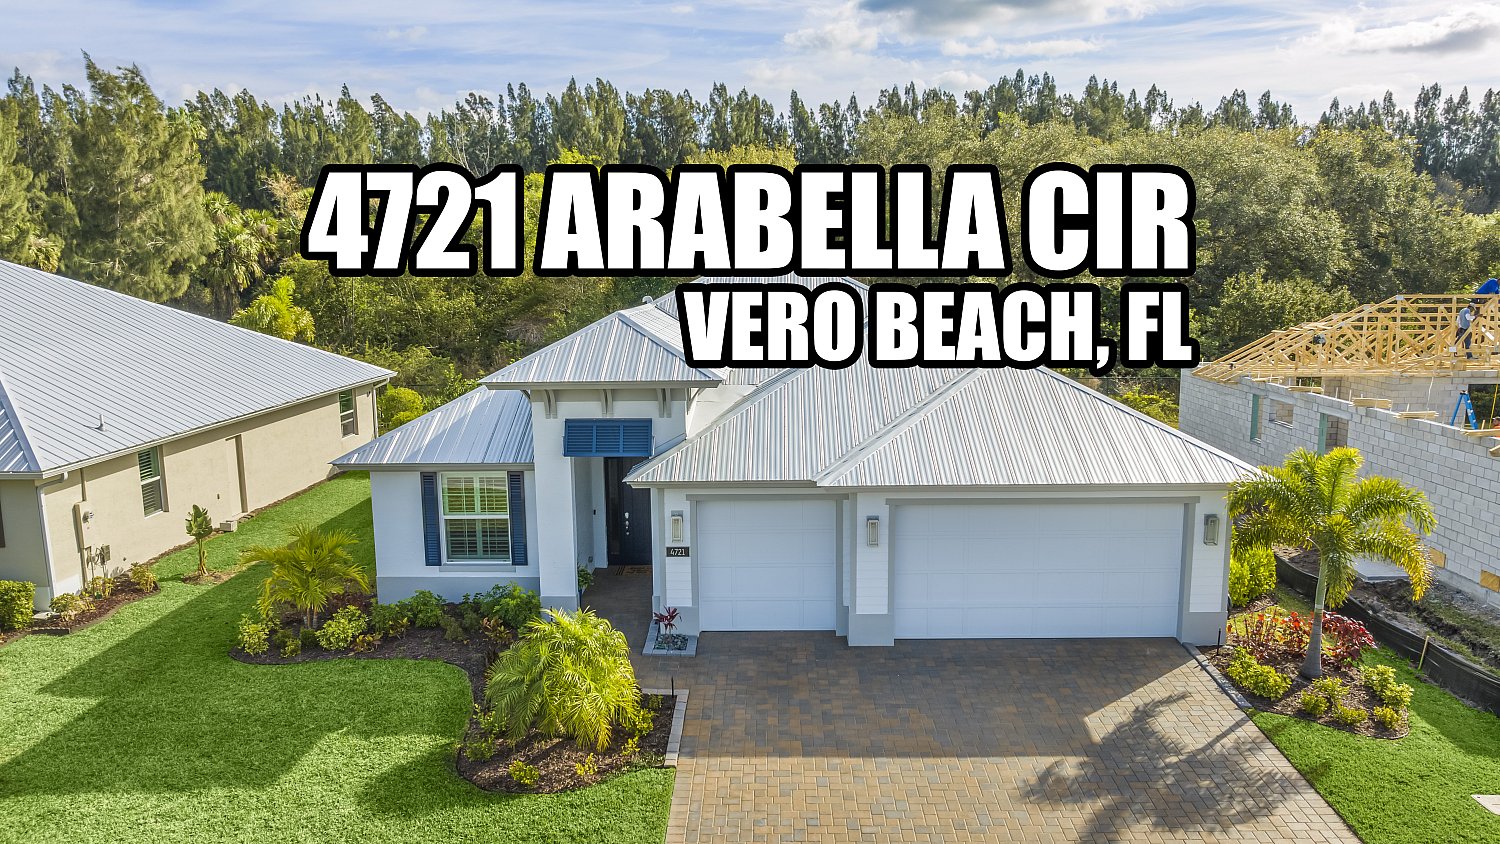 4721-arabella-circle-vero-beach-fl-usa-047.jpg